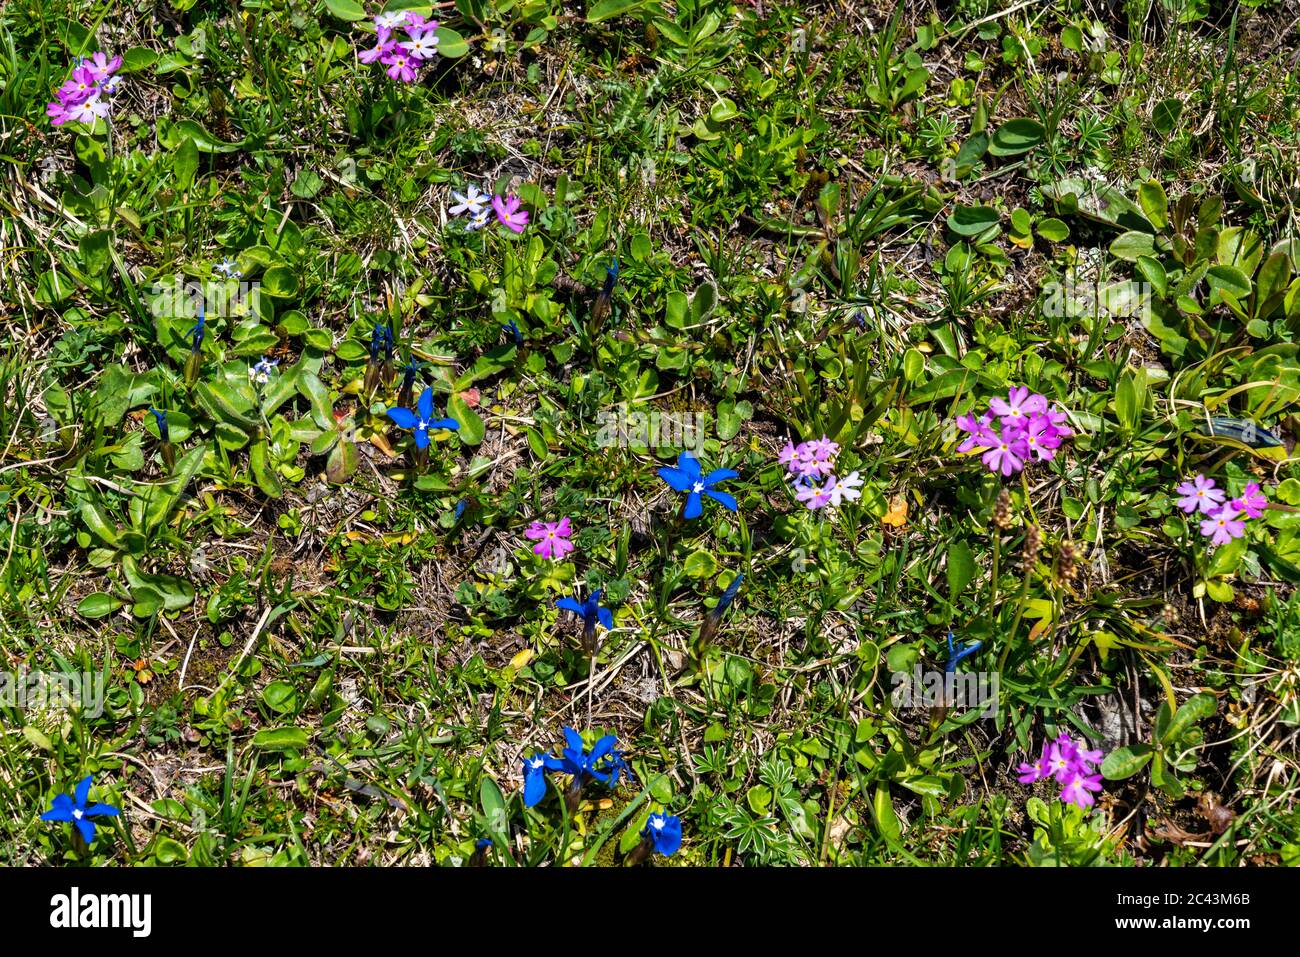 Fiori in montagna, Bergblumen, Blumen, Wiesenblumen, Vorarlberg, Bregenzerwald, Lechtal, Österreich, verschiedene Blumen, Enzian, Foto Stock